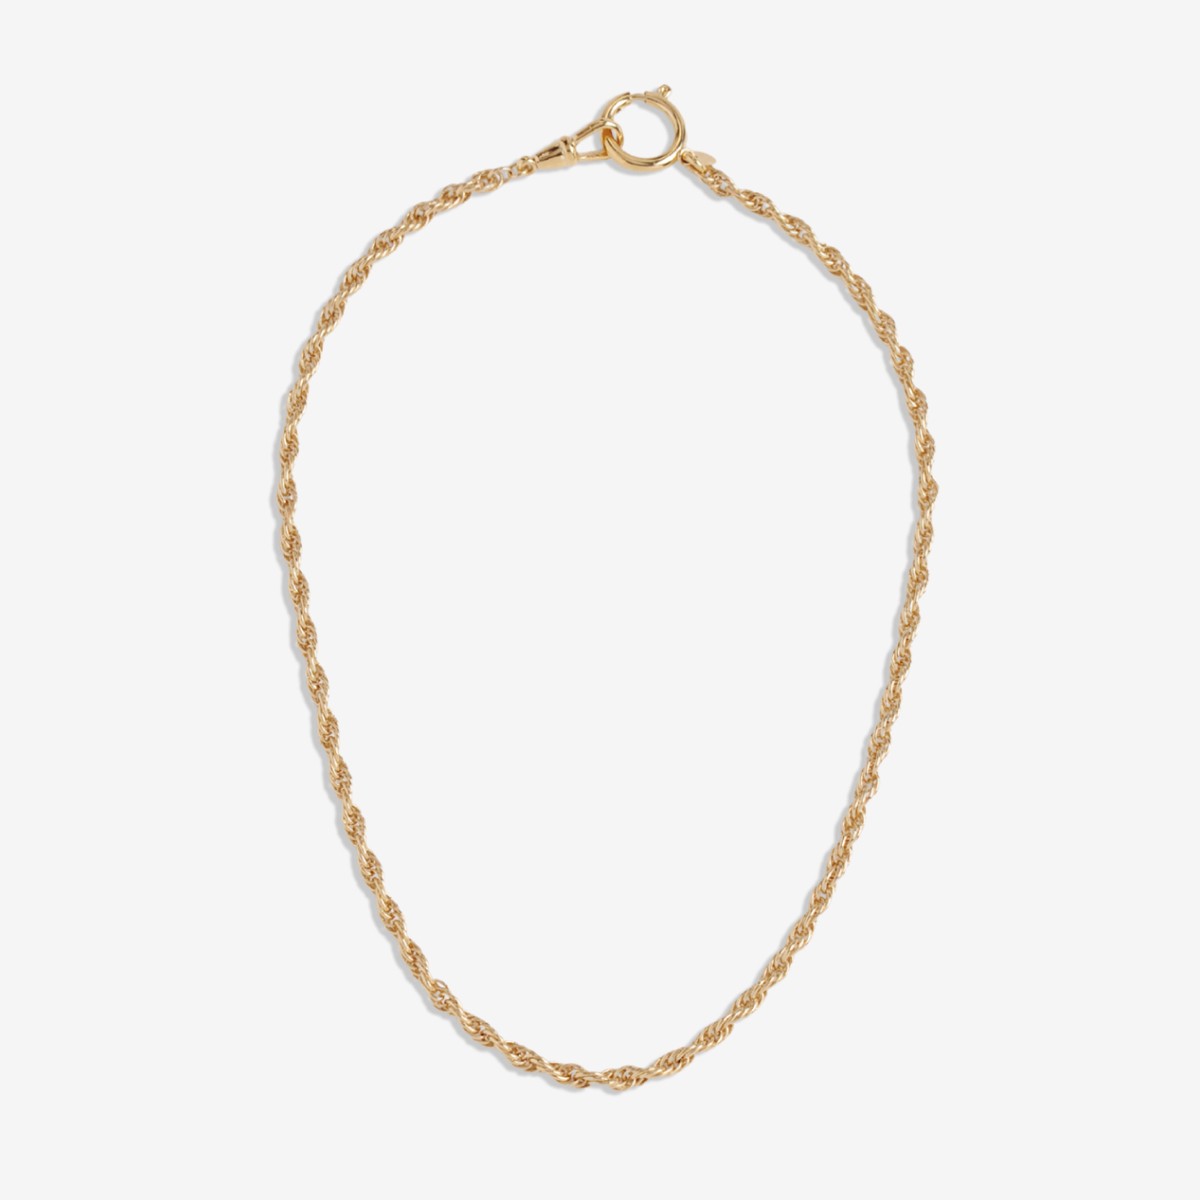 Marguerite Chain Small - Halsketten - 24k vergoldet